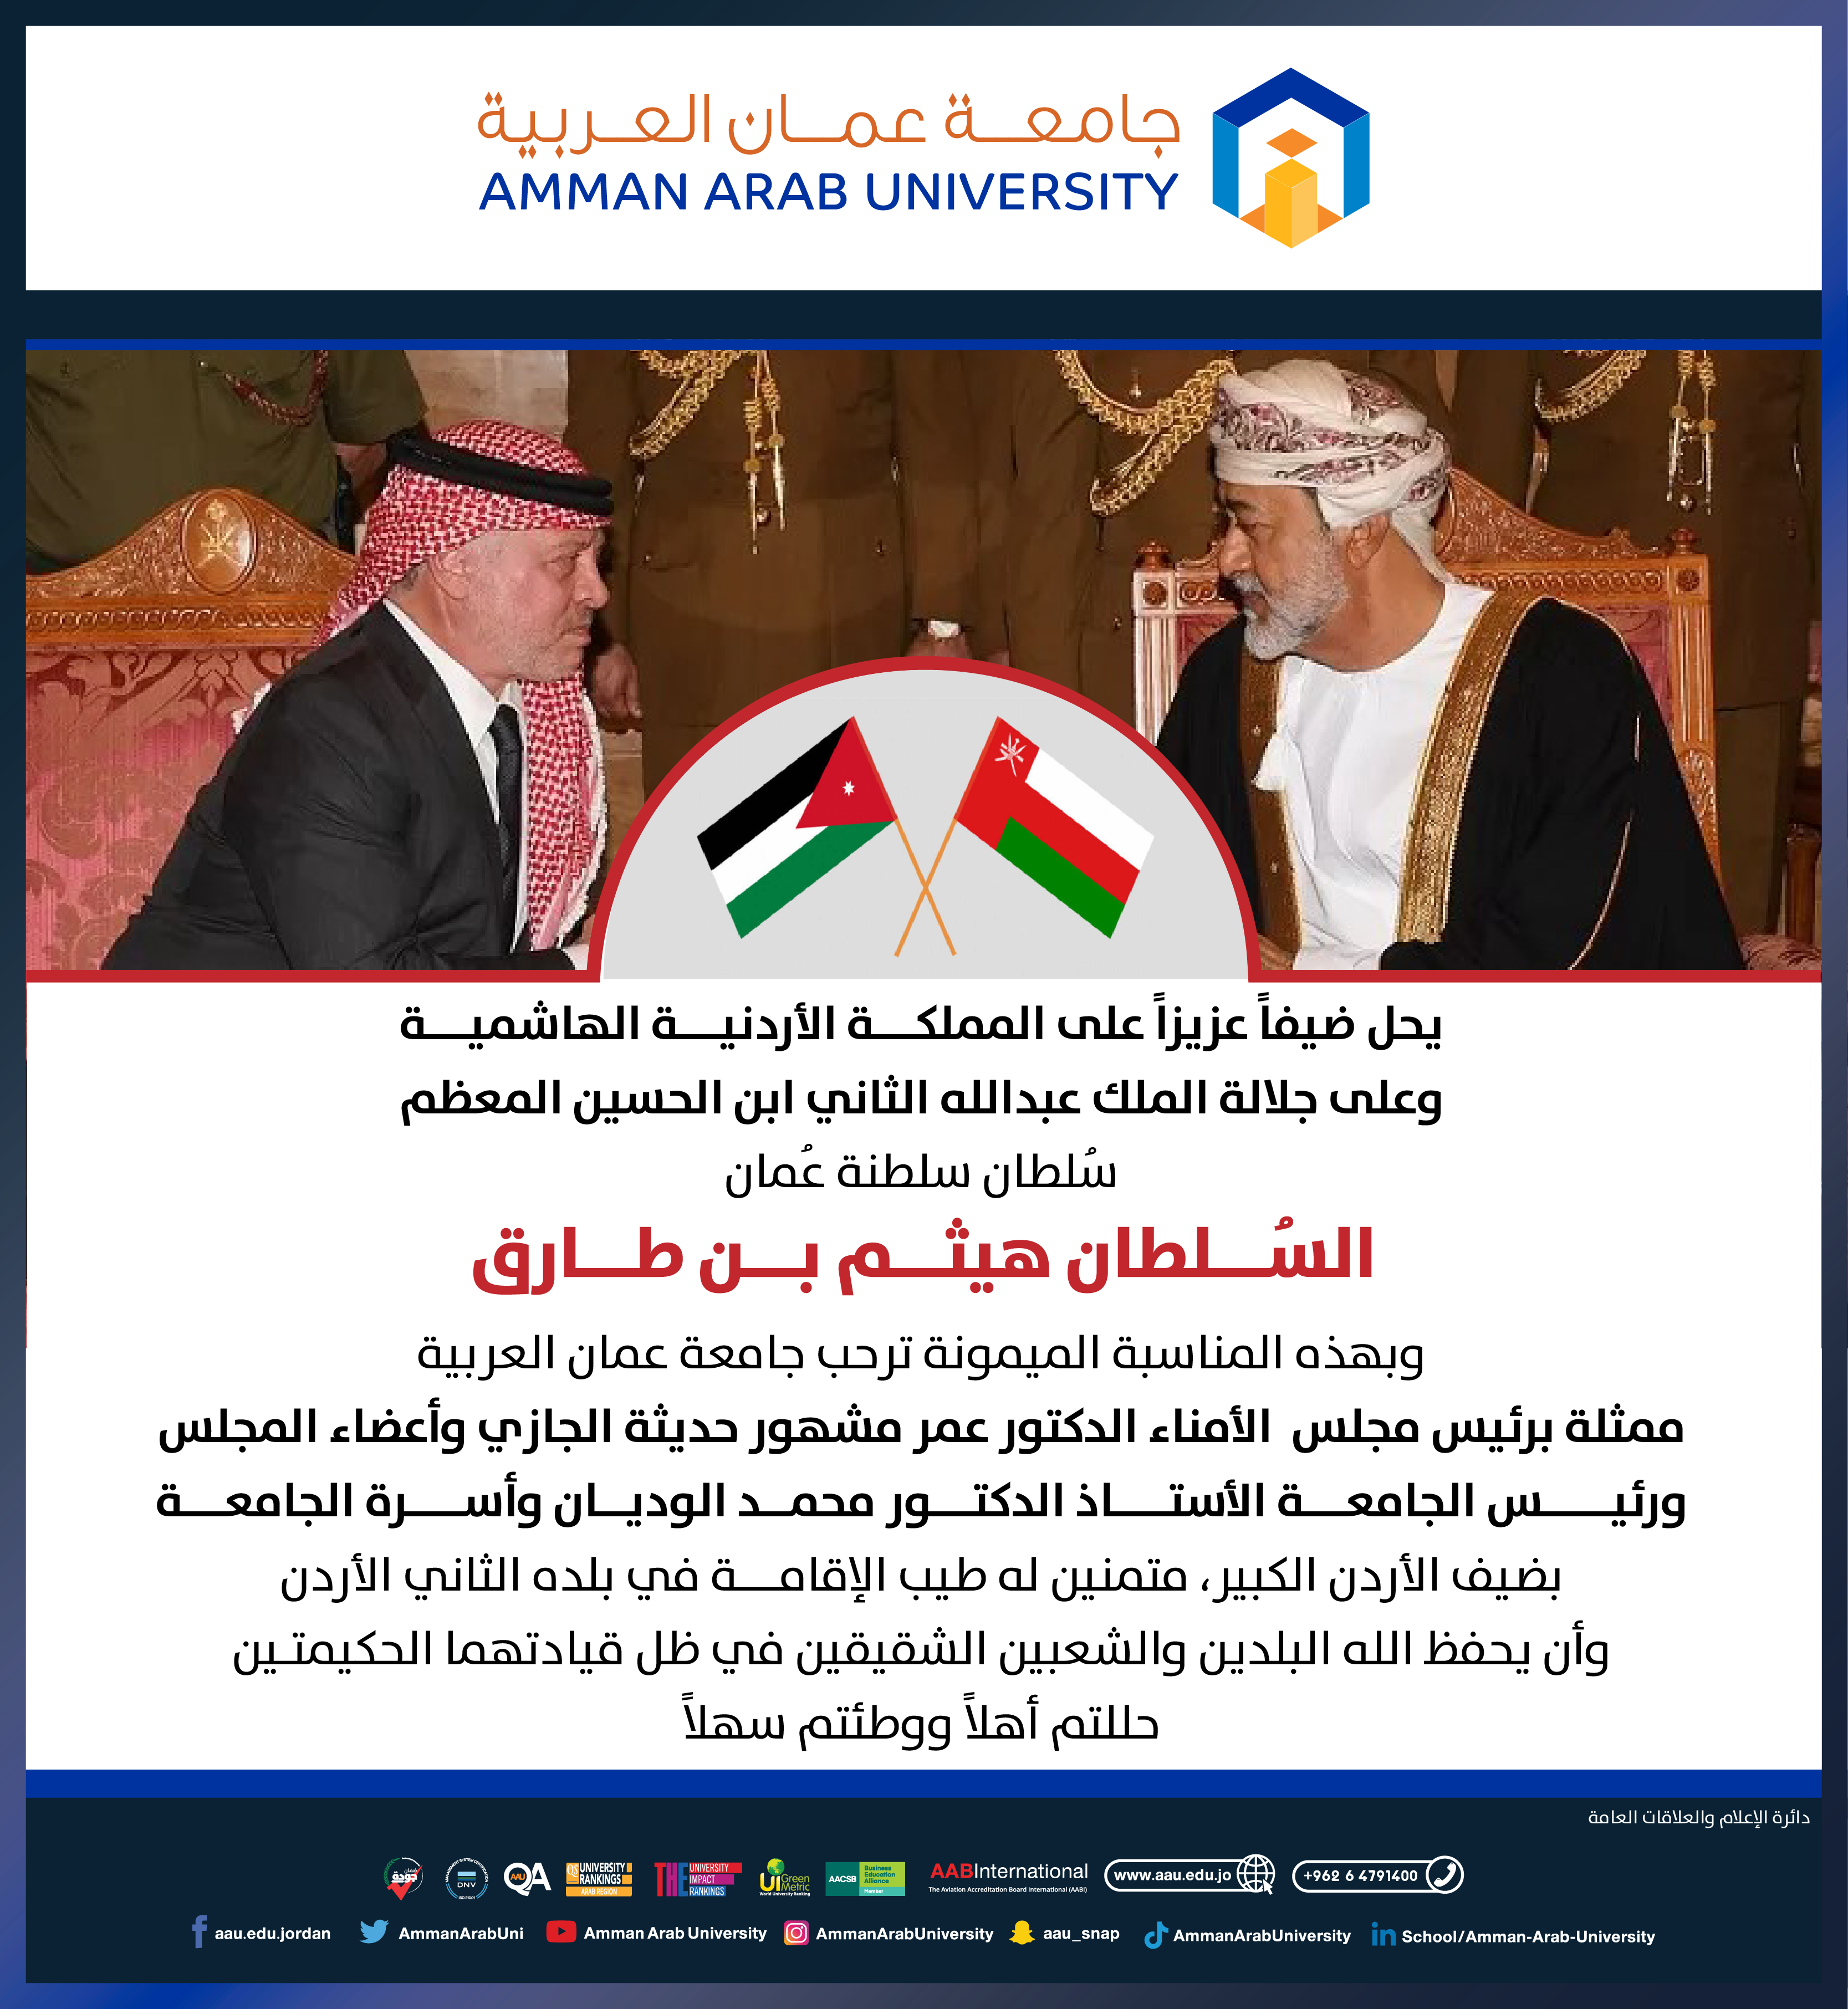 جامعة عمان العربية ترحب بضيف الأردن السلطان هيثم بن طارق سُلطان سلطنة عُمان‎